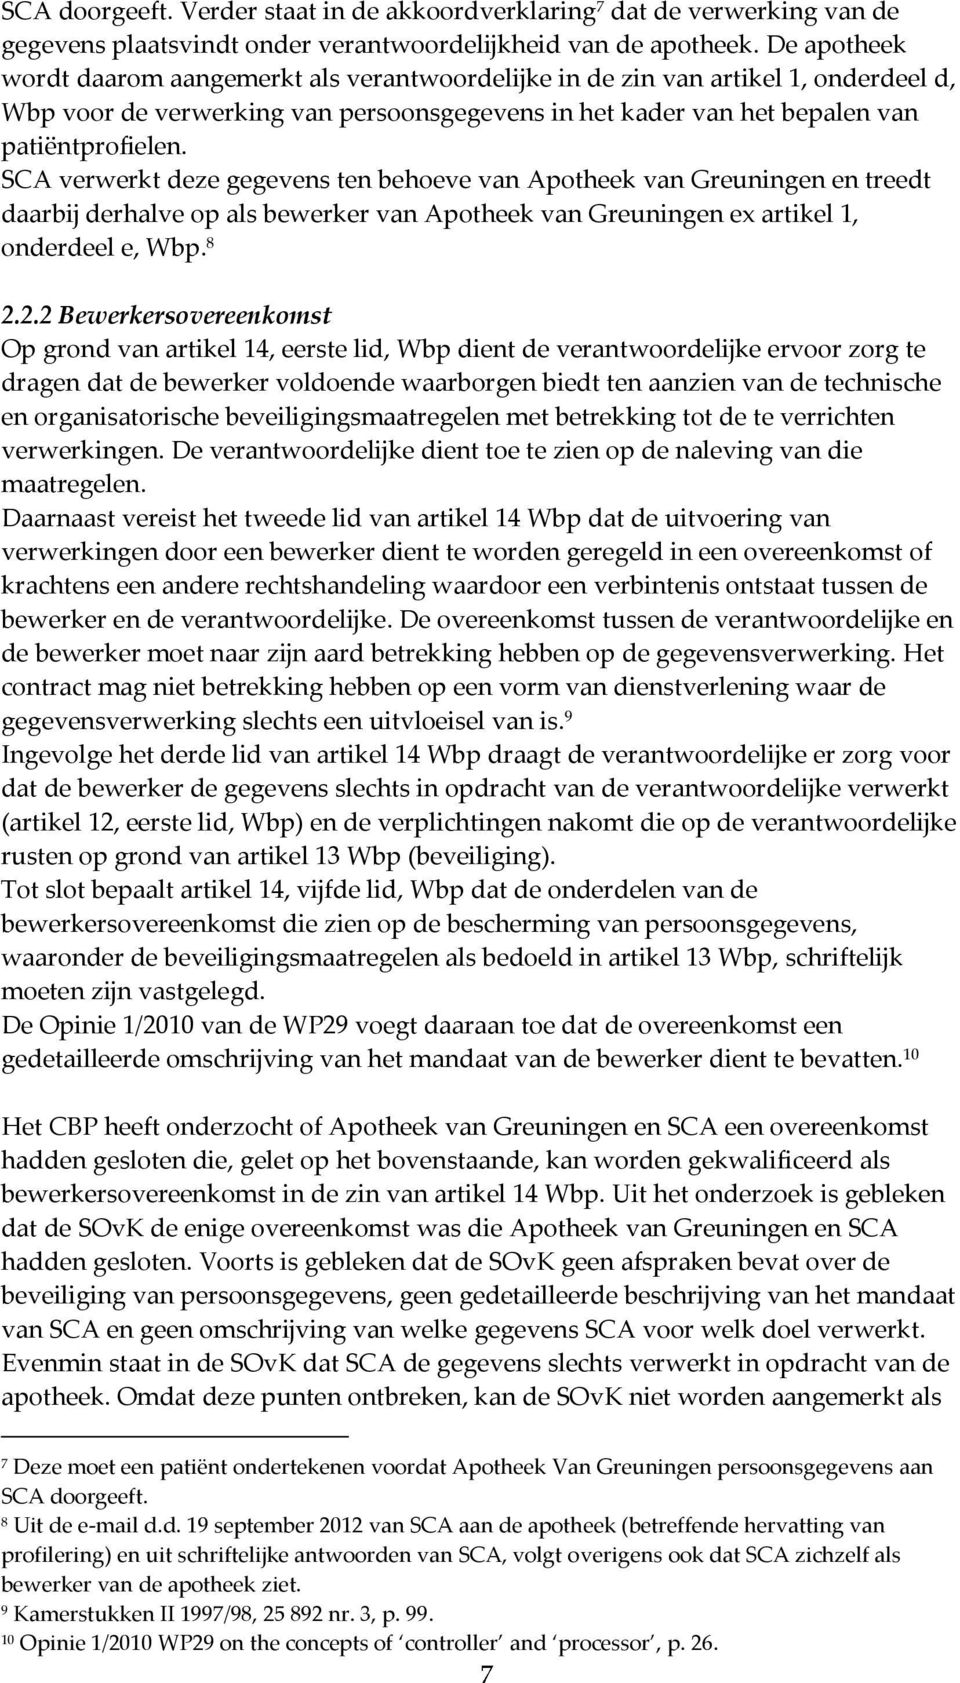 SCA verwerkt deze gegevens ten behoeve van Apotheek van Greuningen en treedt daarbij derhalve op als bewerker van Apotheek van Greuningen ex artikel 1, onderdeel e, Wbp. 8 2.